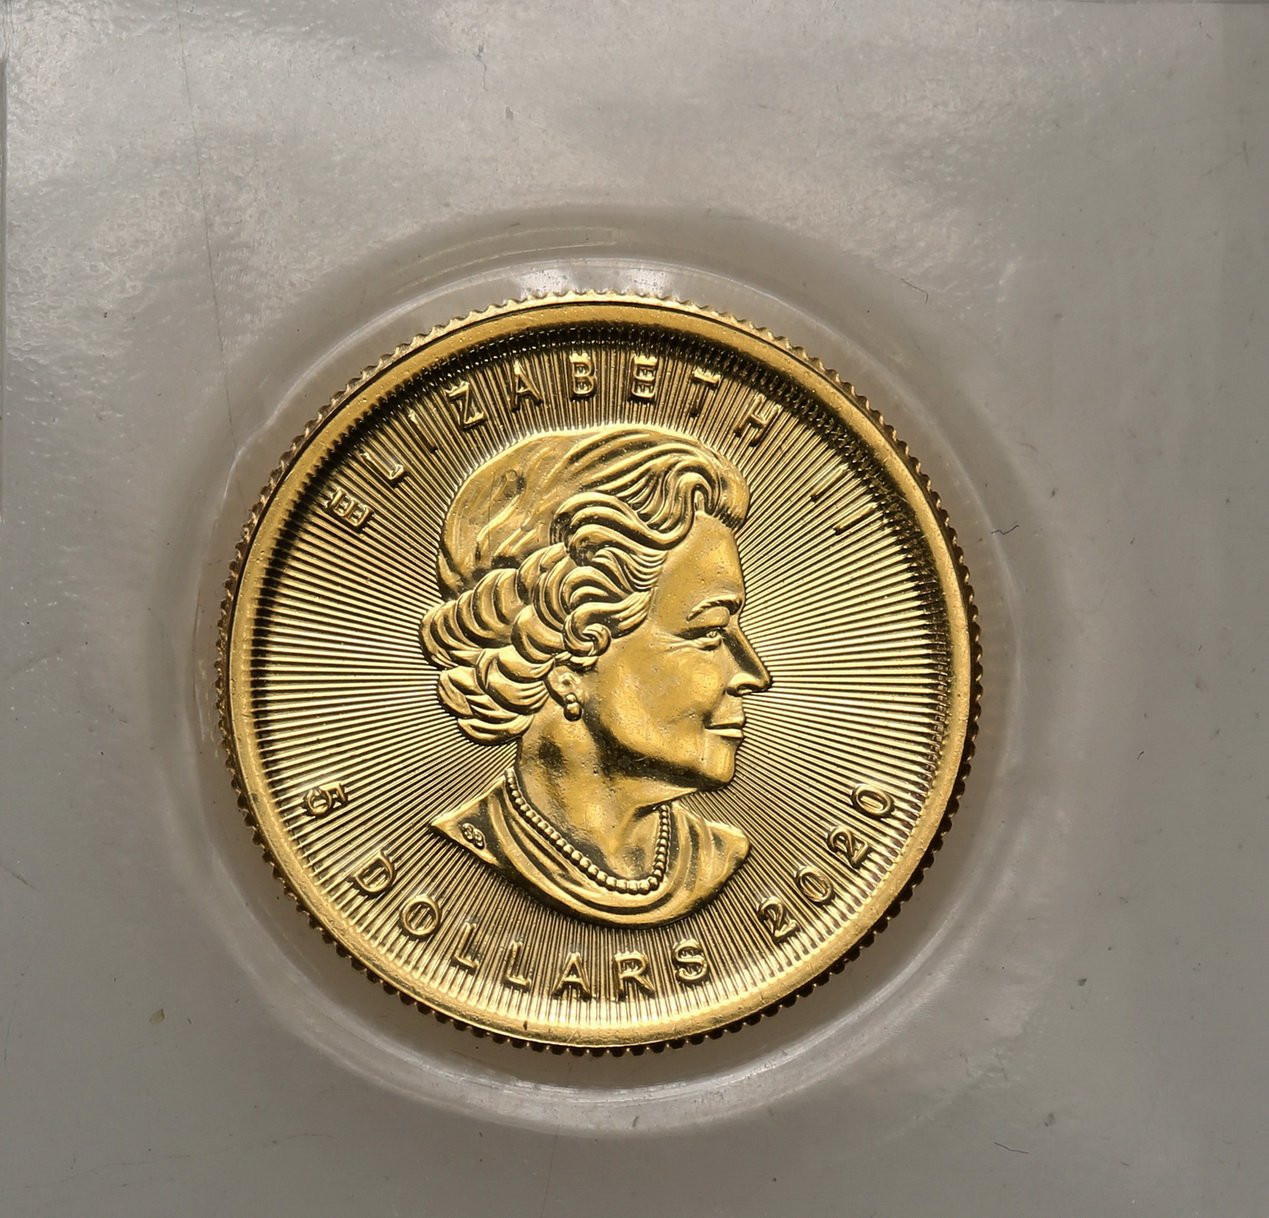 Kanada 5 dolarów 2020 liść klonowy (1/10 uncji złota) st.1